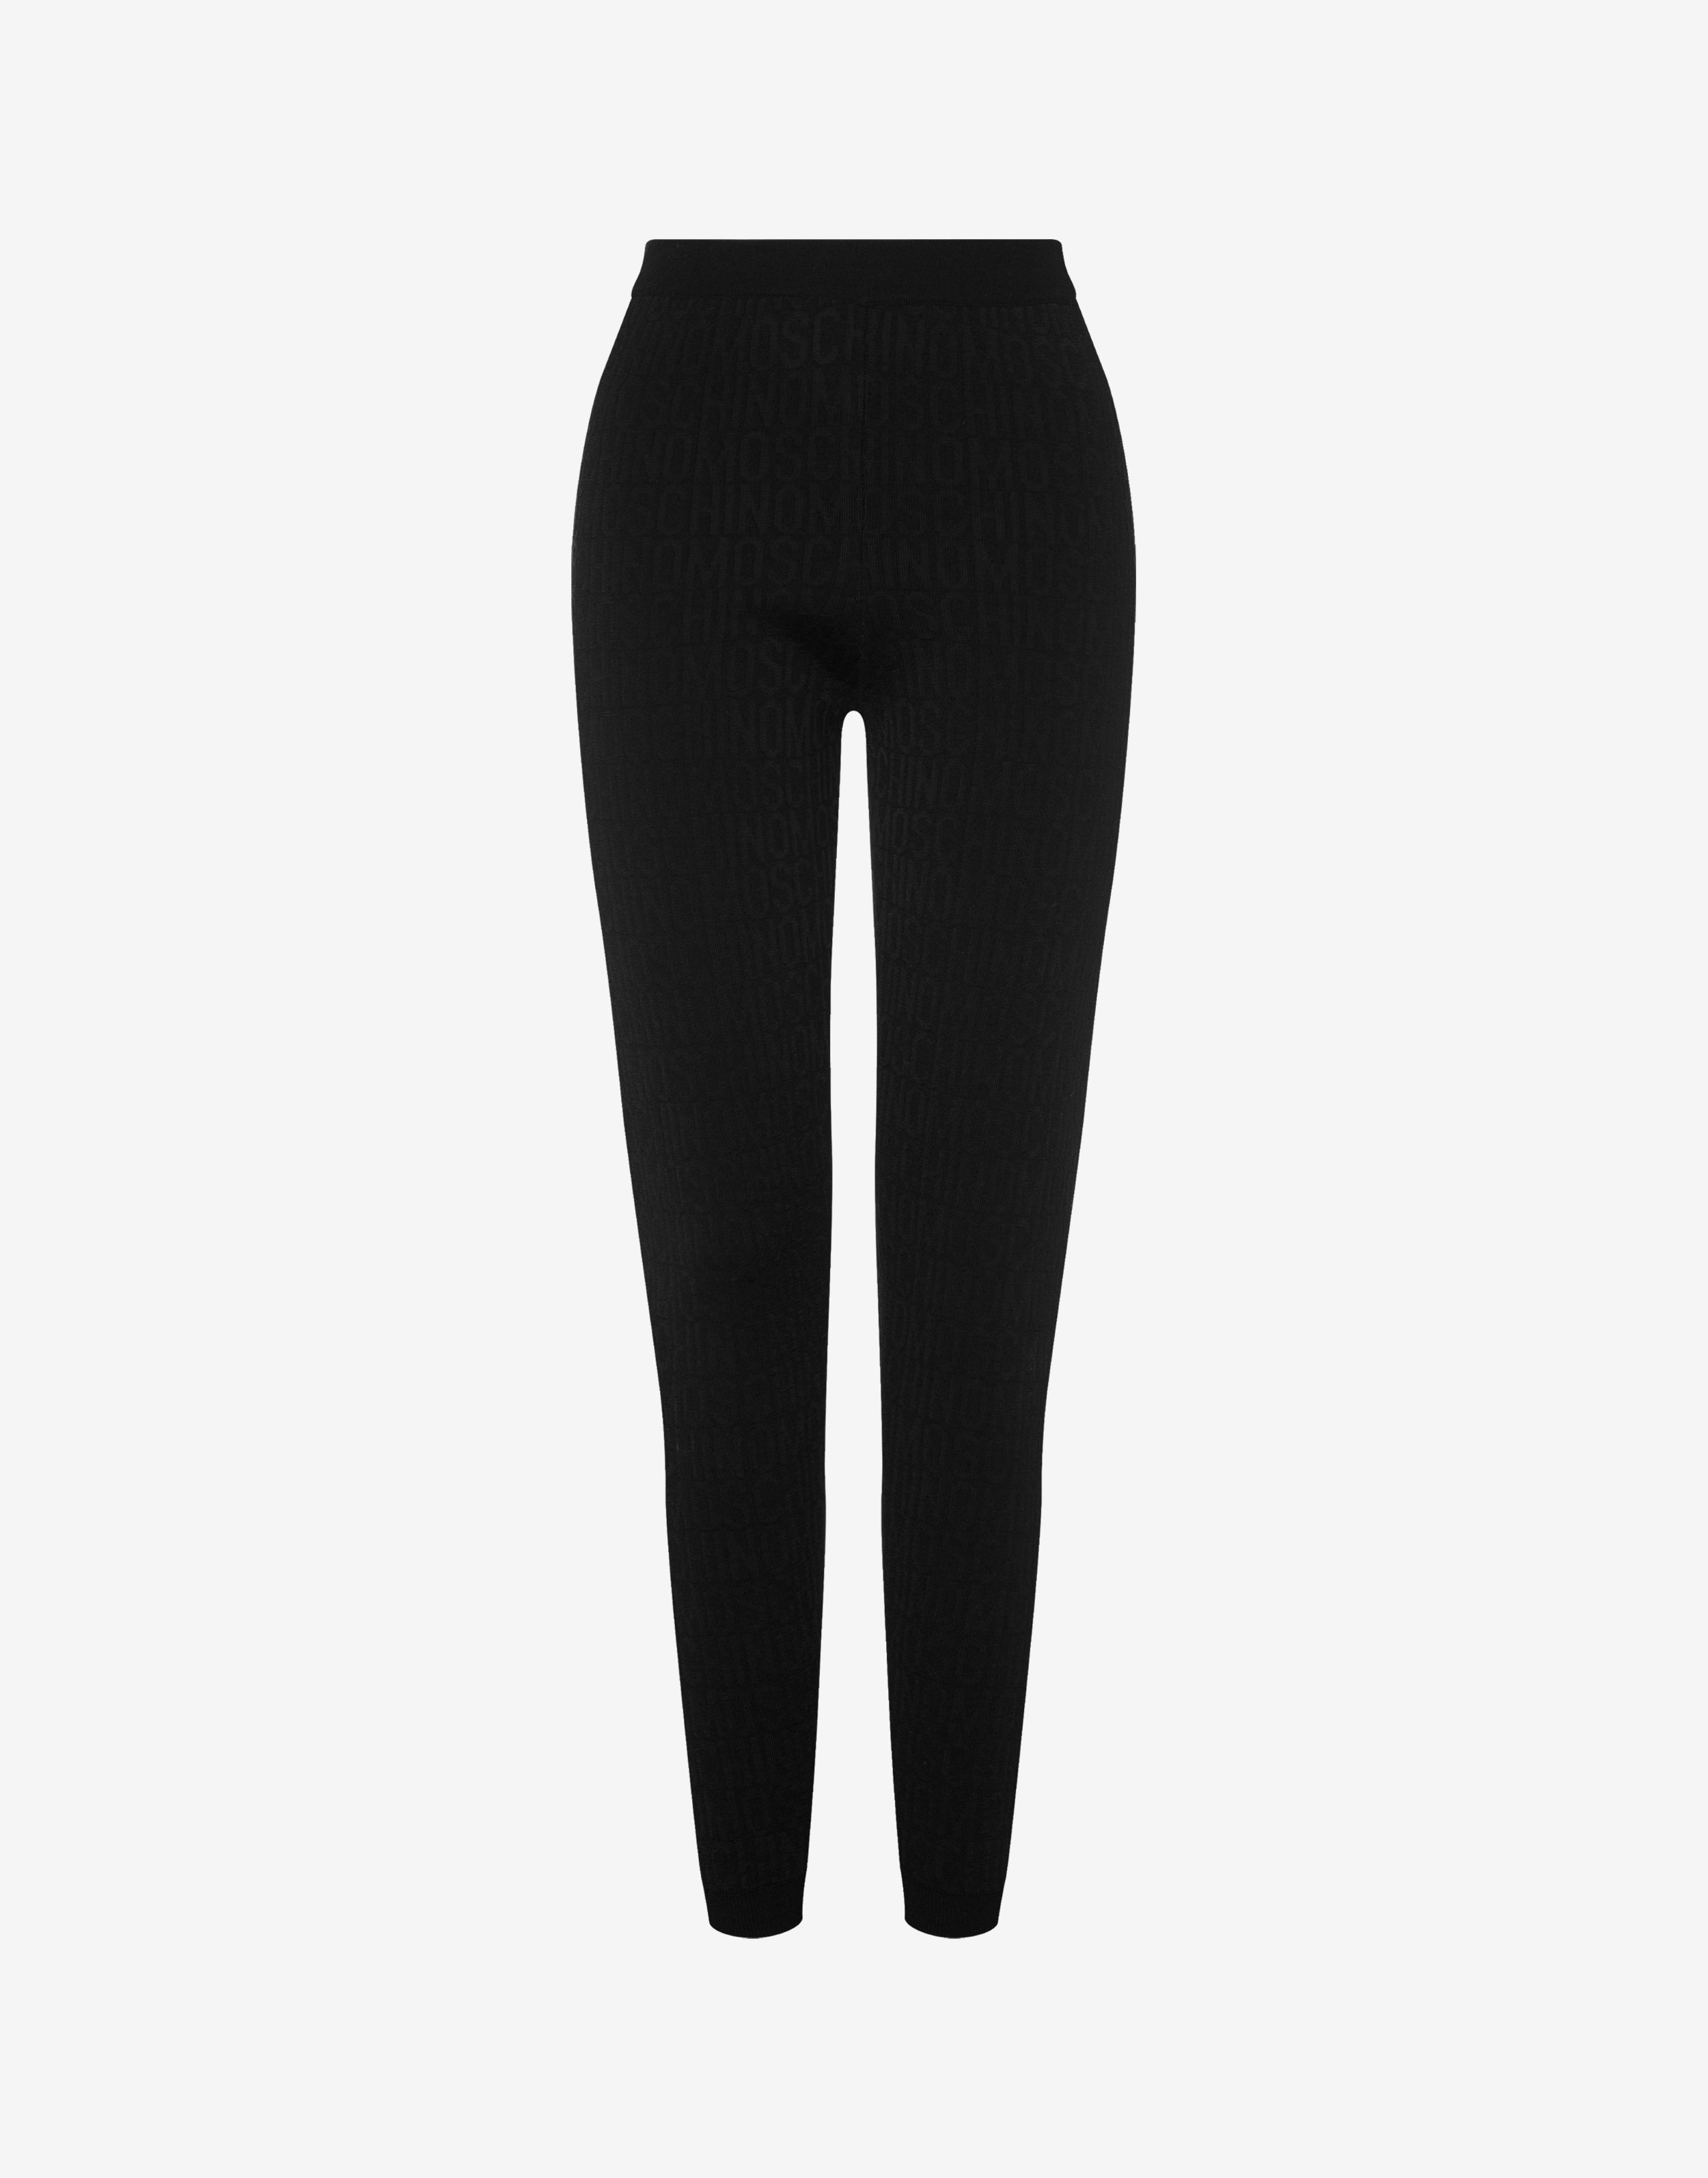 Evamoso- Cropped black leggings UK- Evamoso